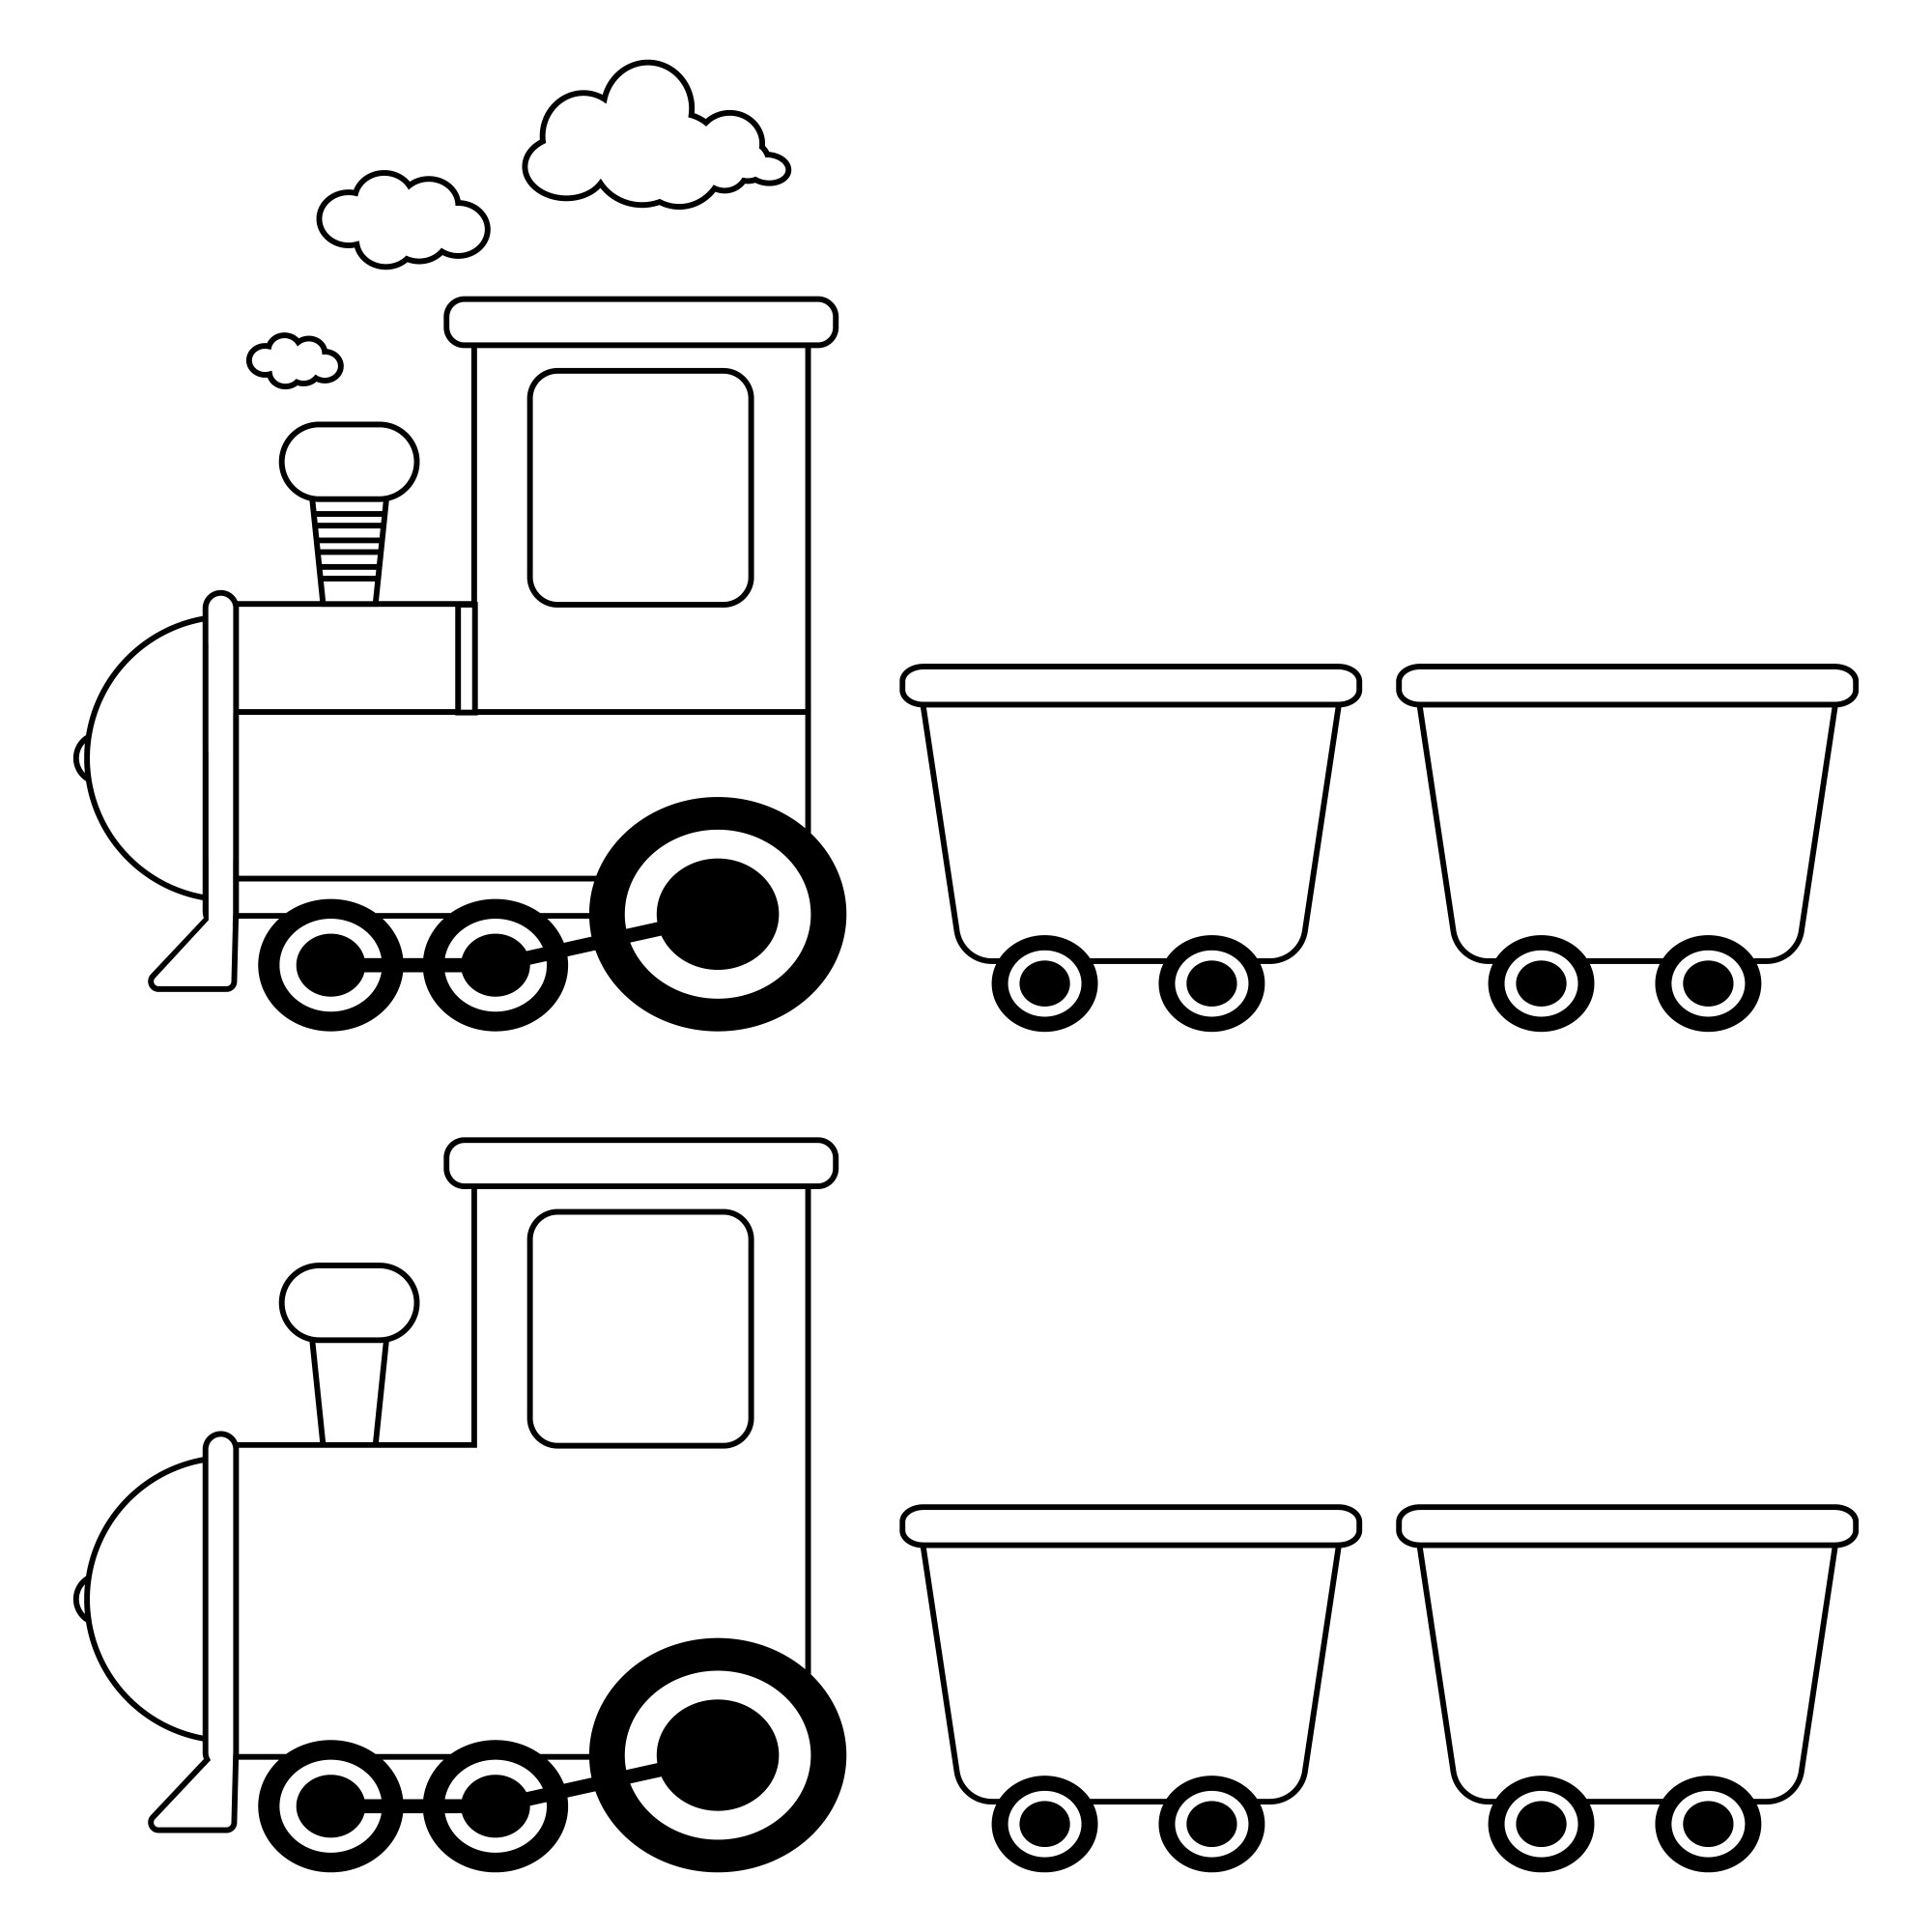 Раскраска для детей: два детских поезда с тележками